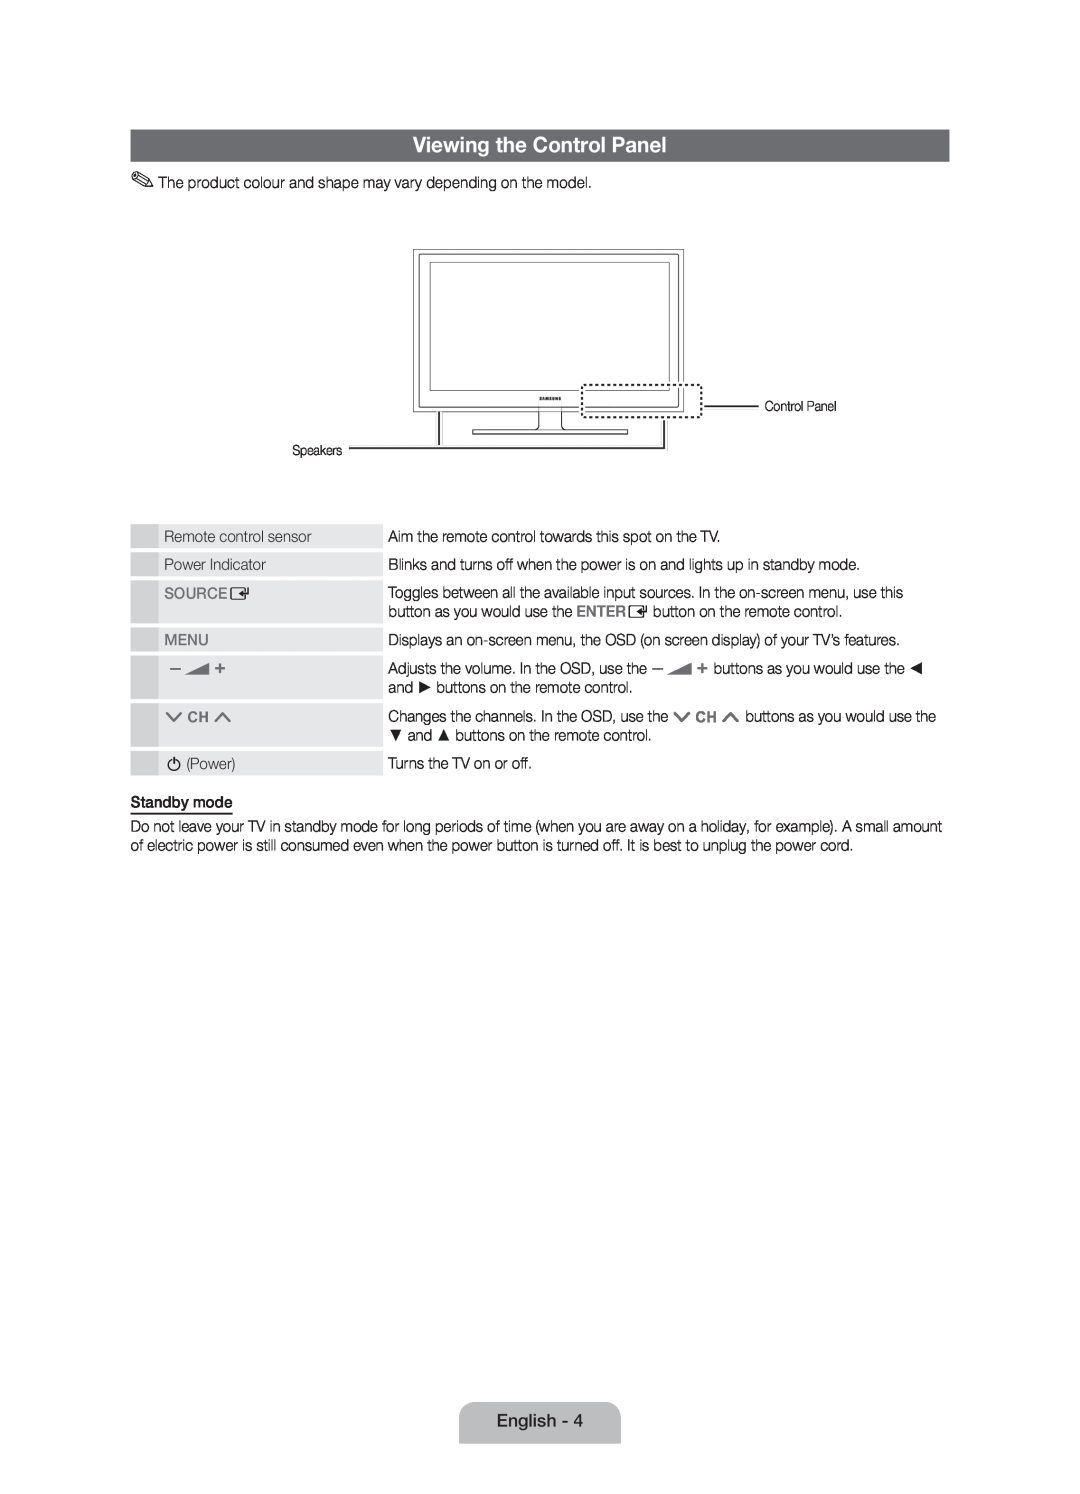 Samsung UE46D5000PWXXC, UE46D5000PWXZG, UE40D5000PWXXH, UE40D5000PWXXC manual Viewing the Control Panel, Source E, Menu 